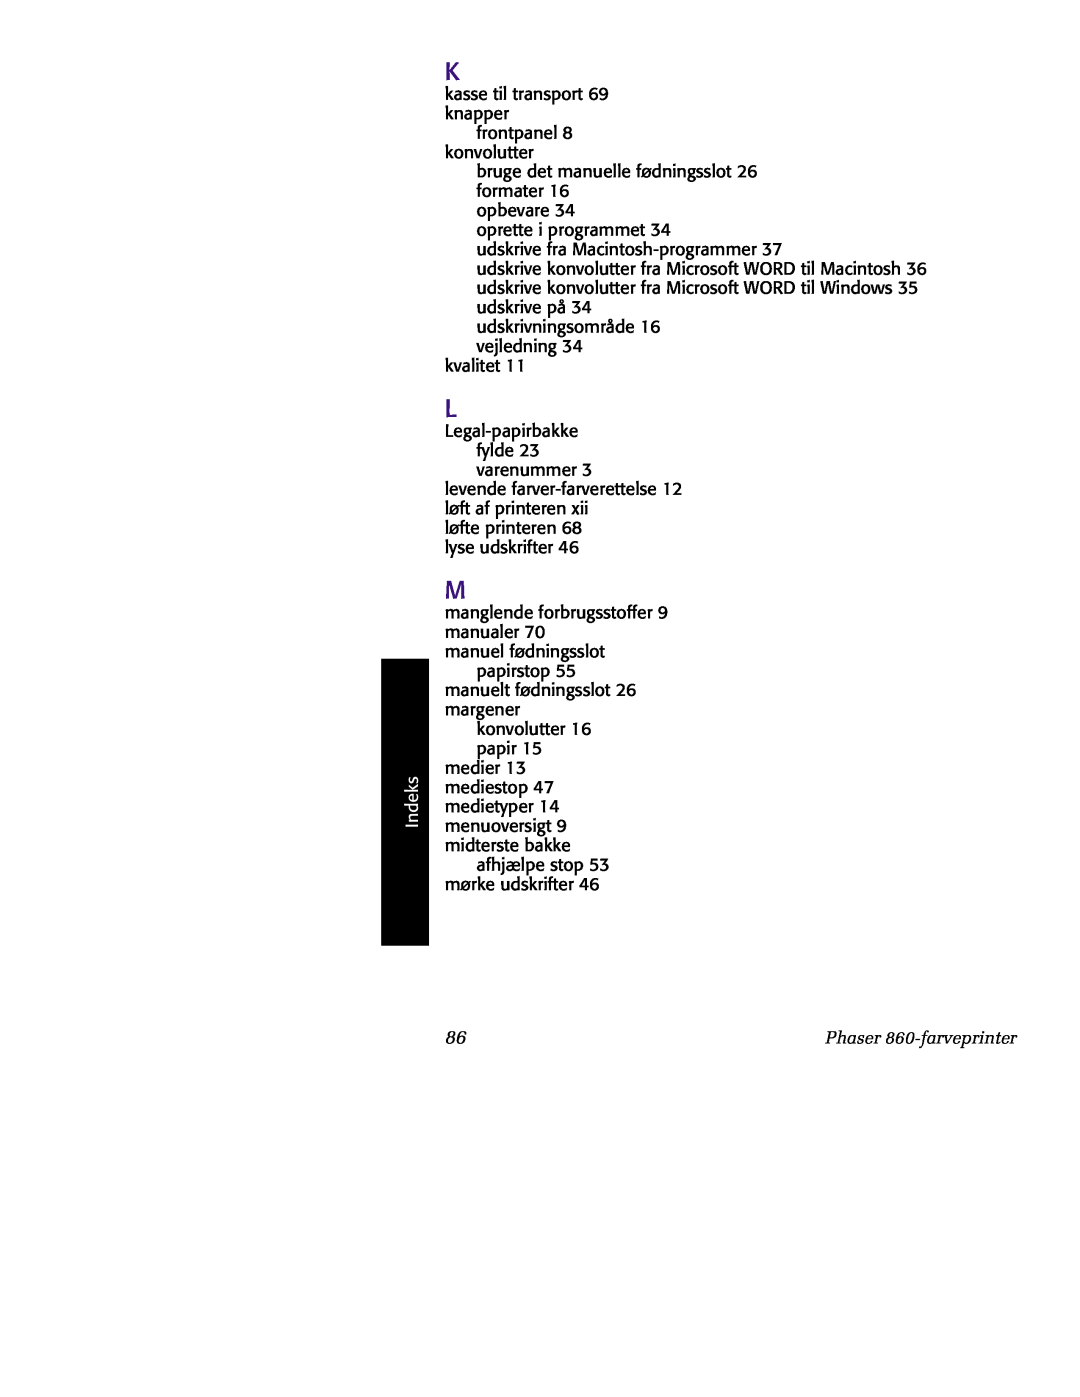 Tektronix manual Indeks, Phaser 860-farveprinter 